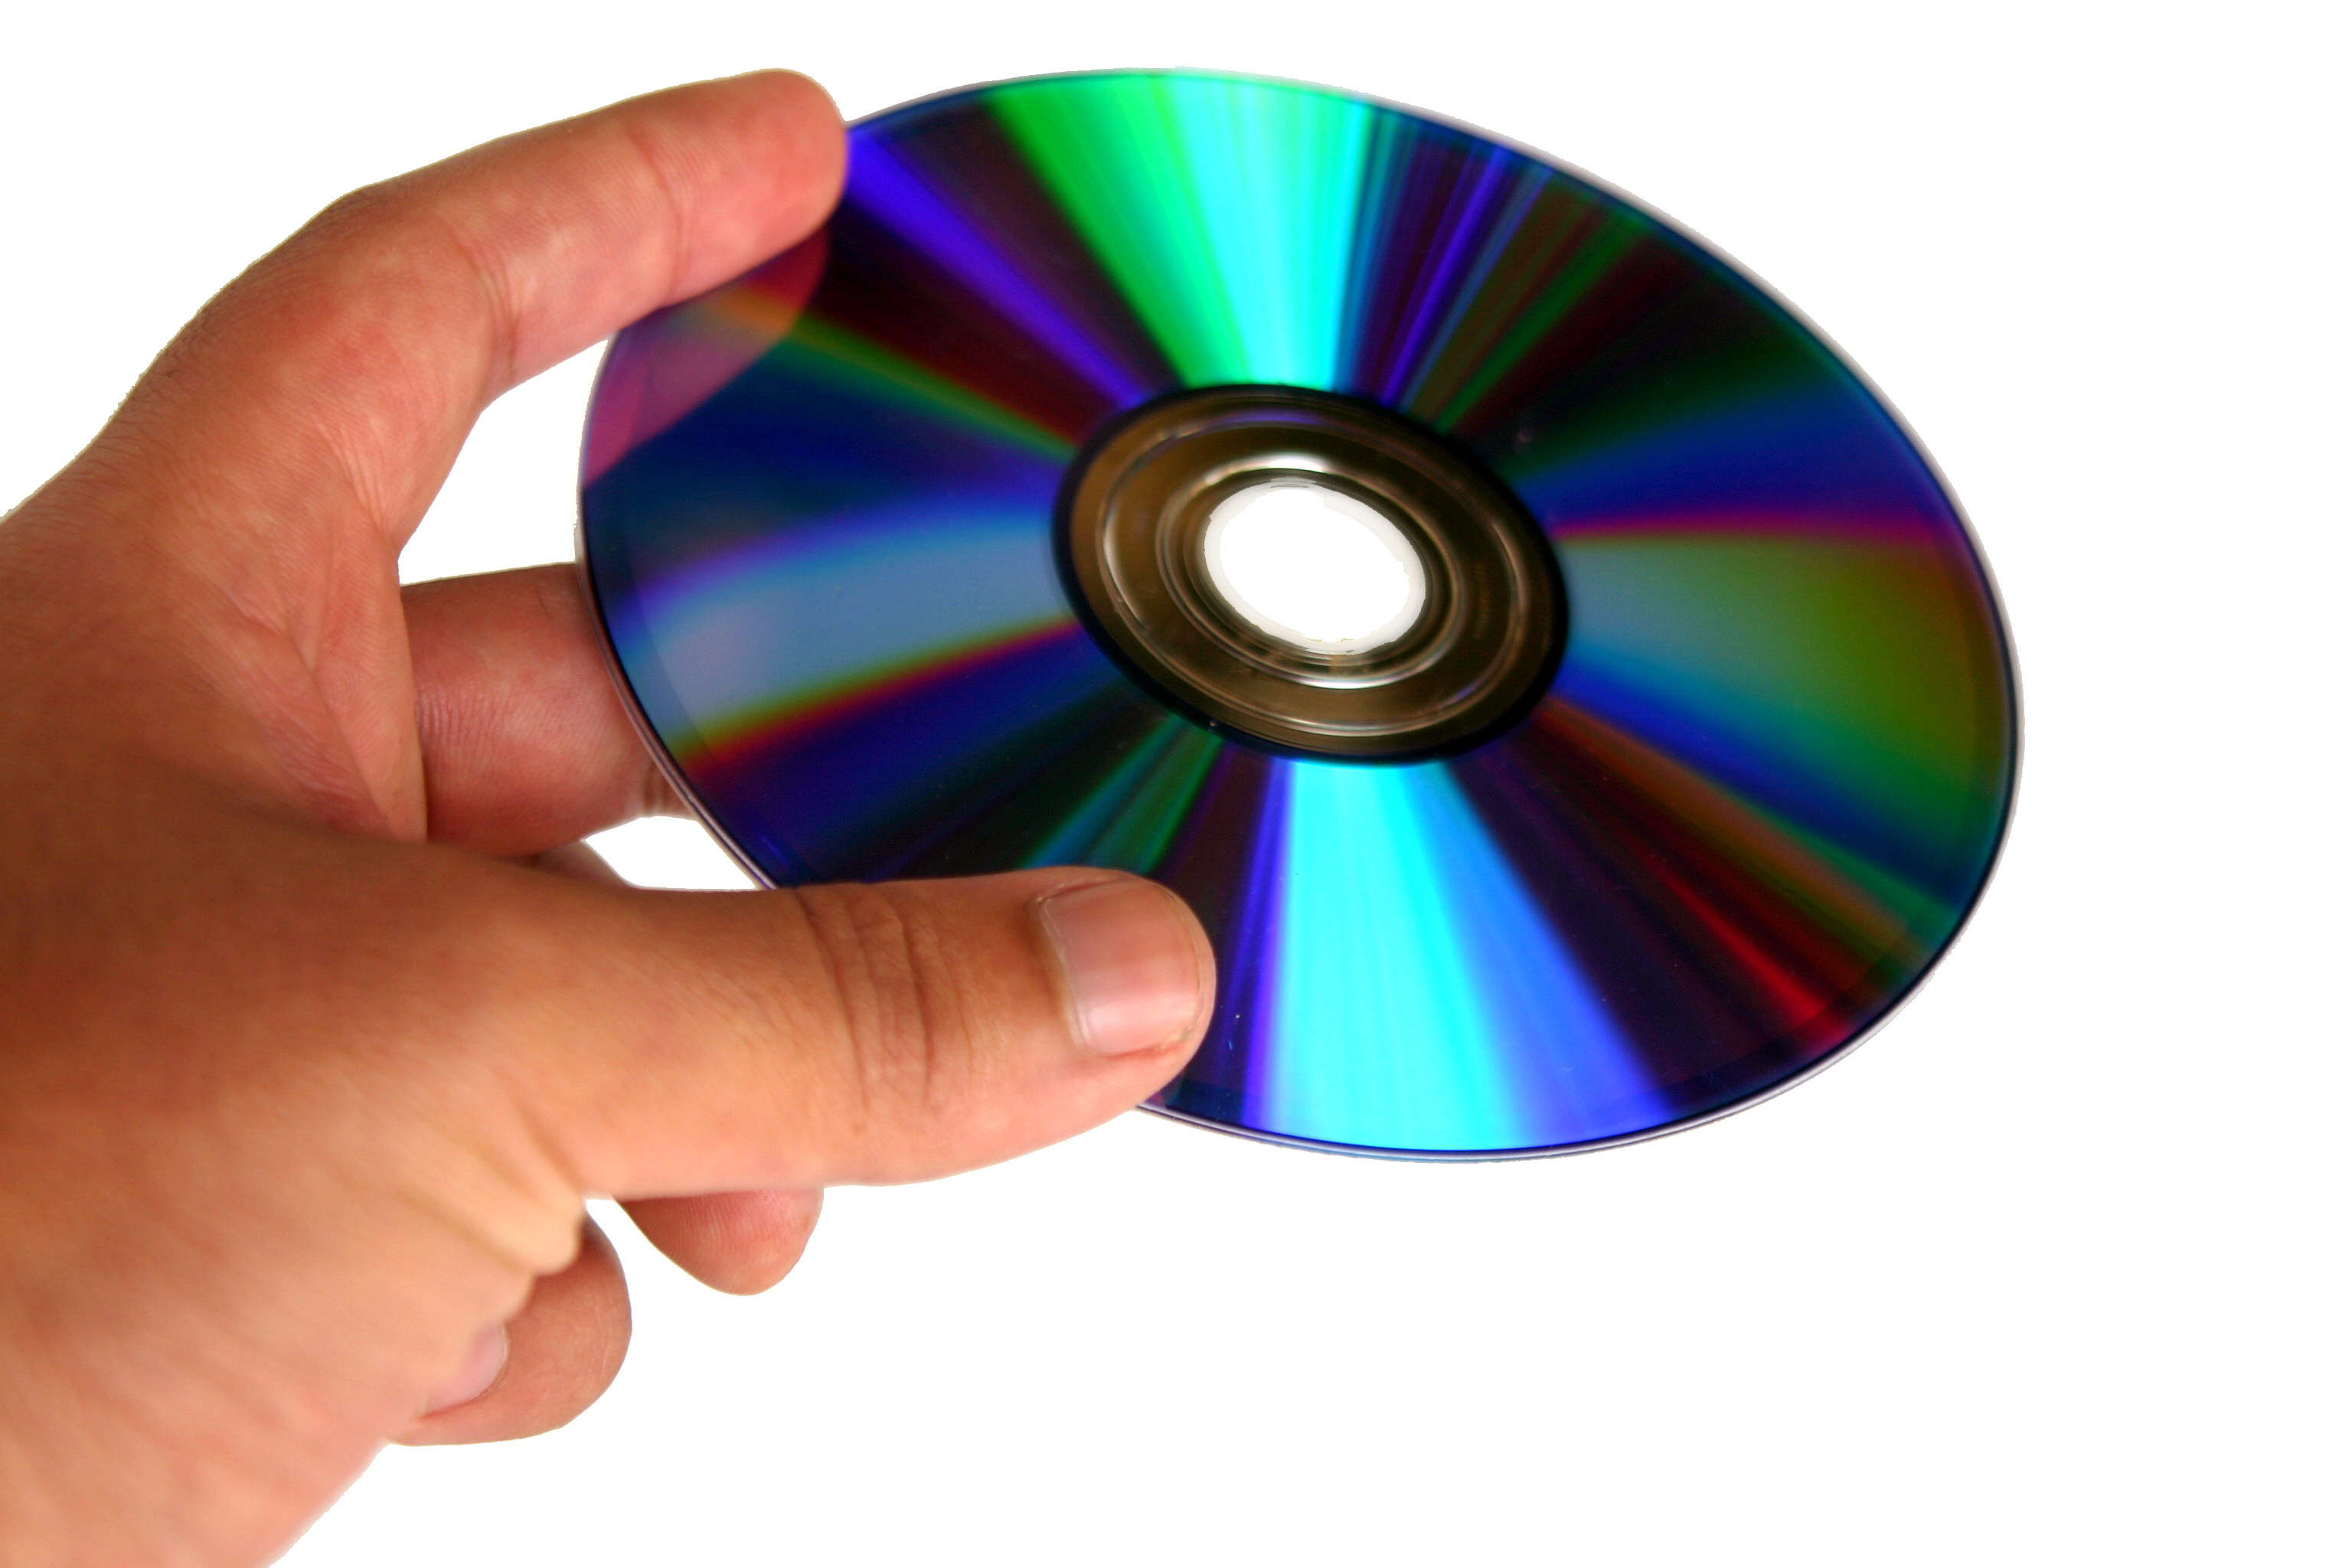 Comment graver un fichier ISO sur un DVD/CD sous Windows 10